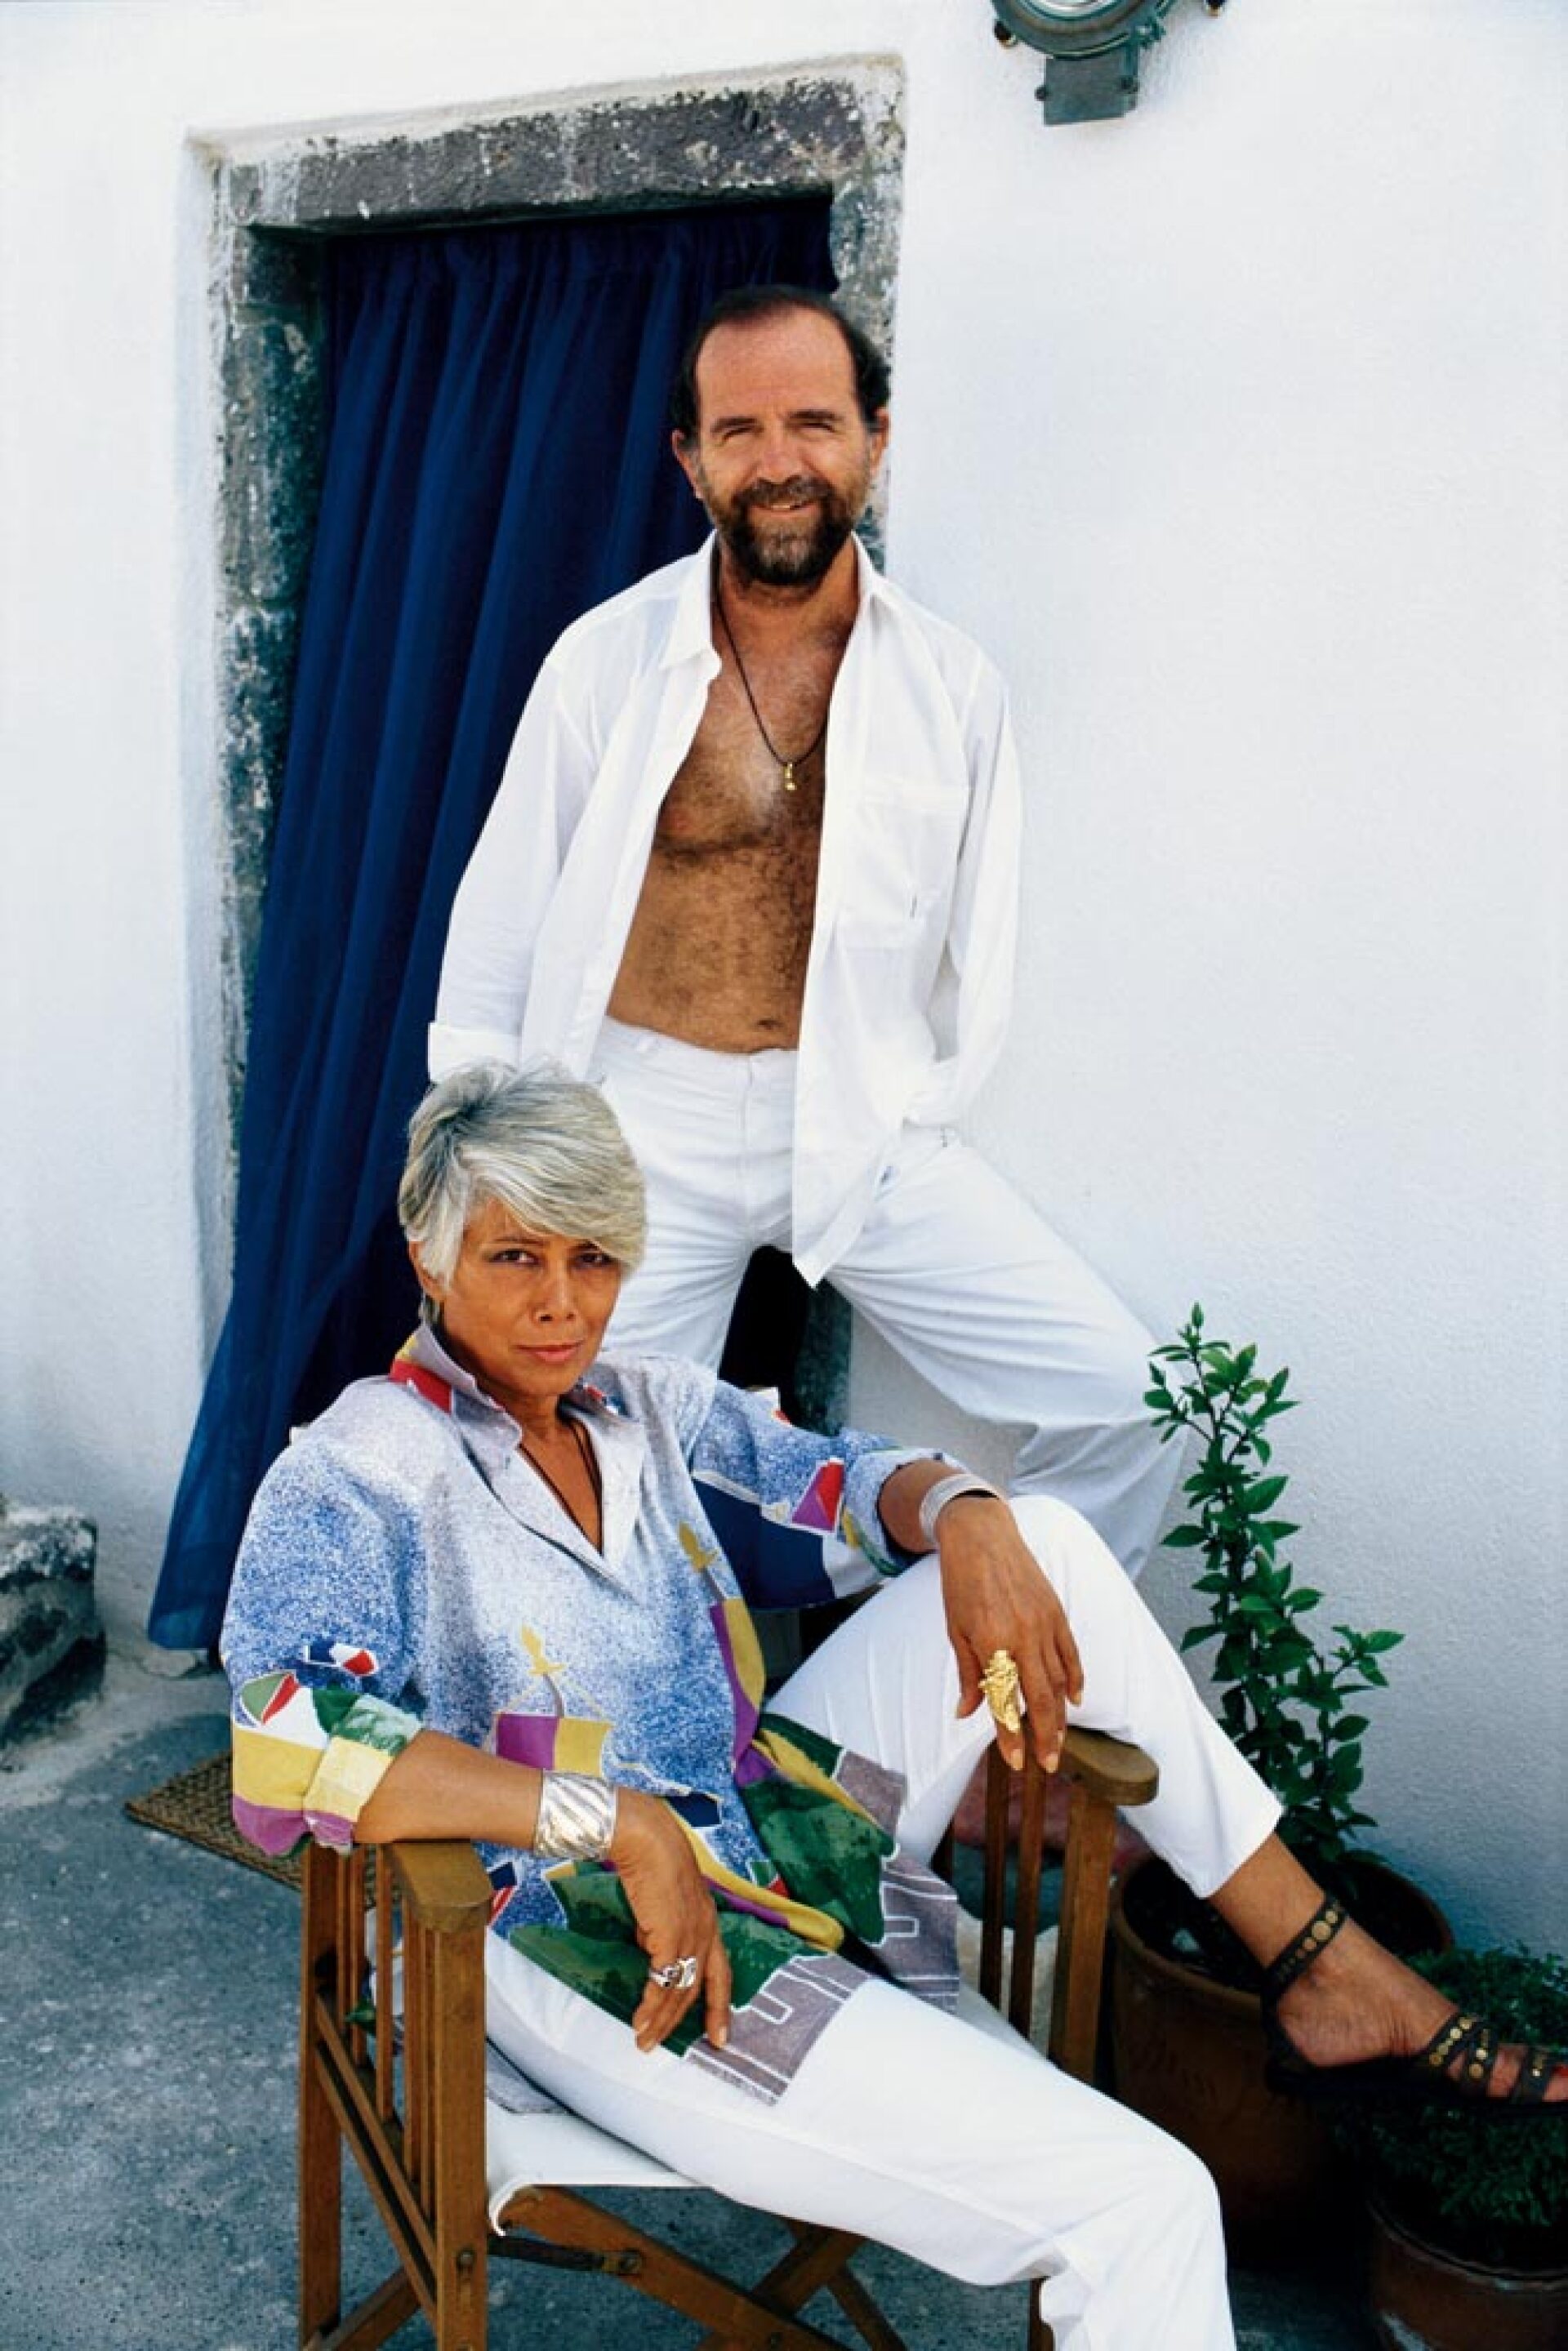 Γιάννης Τσεκλένης και Έφη Μελά το 1997 στον «Περίβολα» της Οίας, το ξενοδοχείο που έχει δημιουργήσει η αδερφή του, Νάντια Ψύχα.